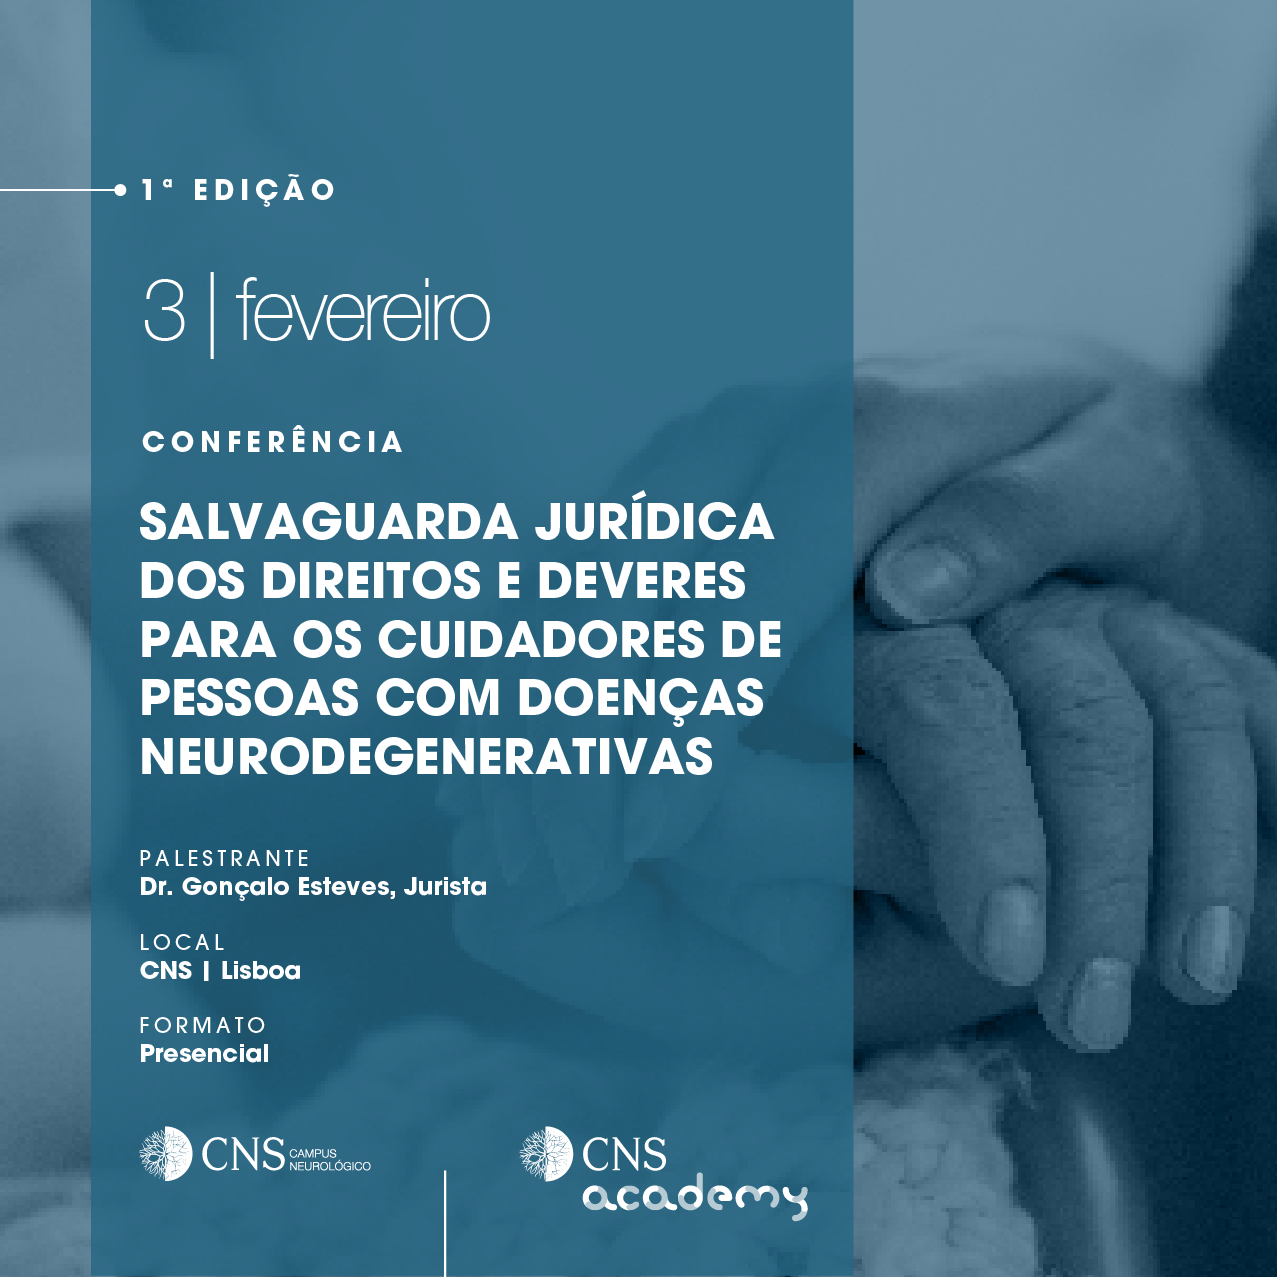 1 Edição | Conferência | Salvaguarda Jurídica Dos Direitos E Deveres Para Os Cuidadores De Pessoas Com Doenças Neurodegenerativas